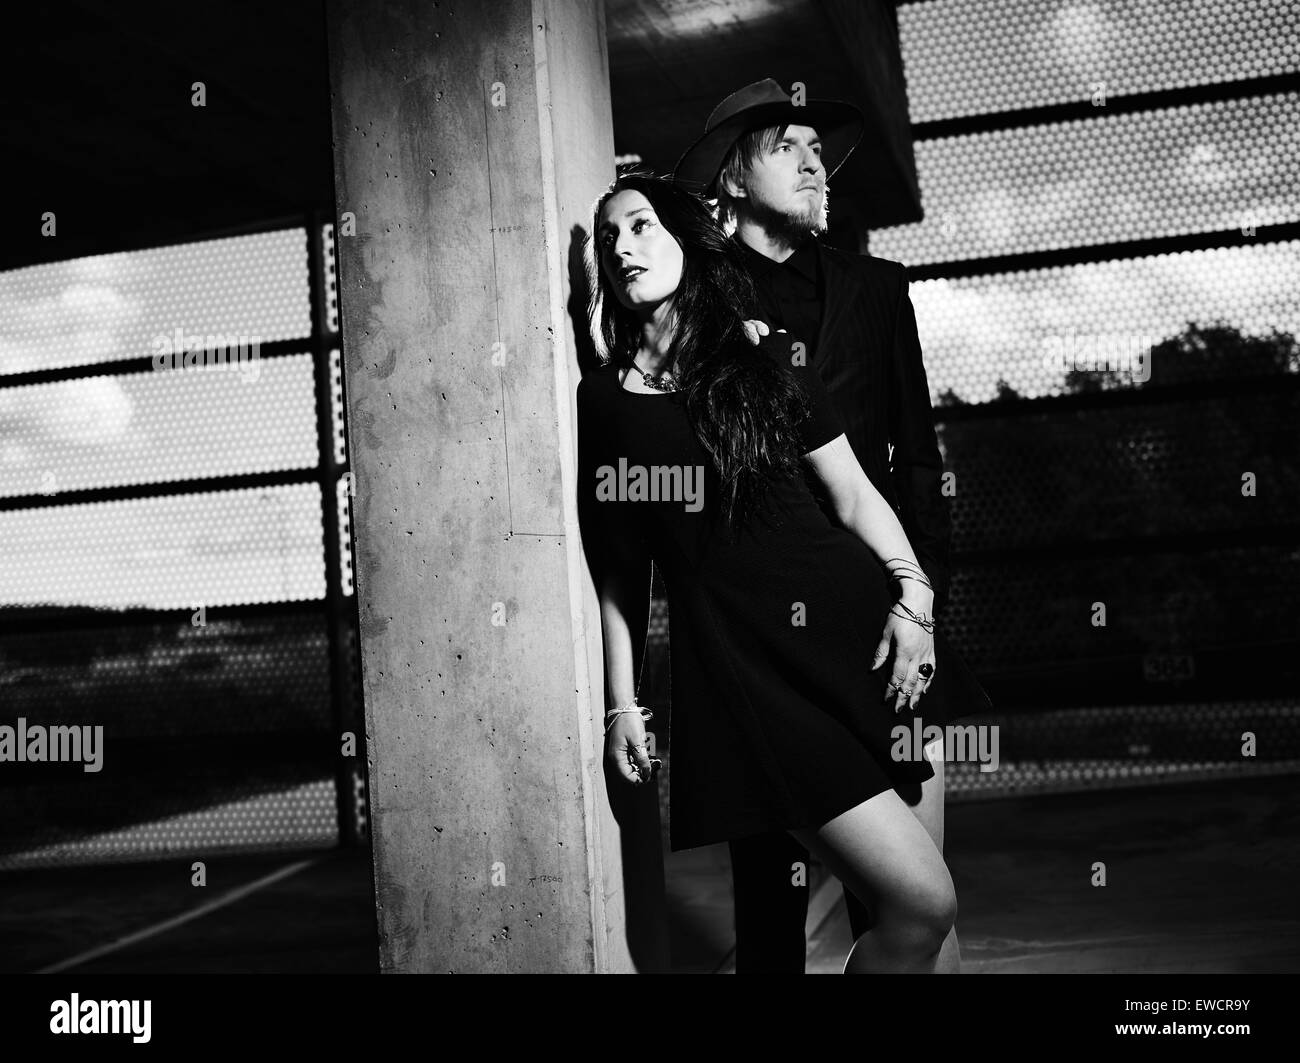 L'homme et la femme ensemble, environs de bâtiment en béton, image en noir et blanc Banque D'Images